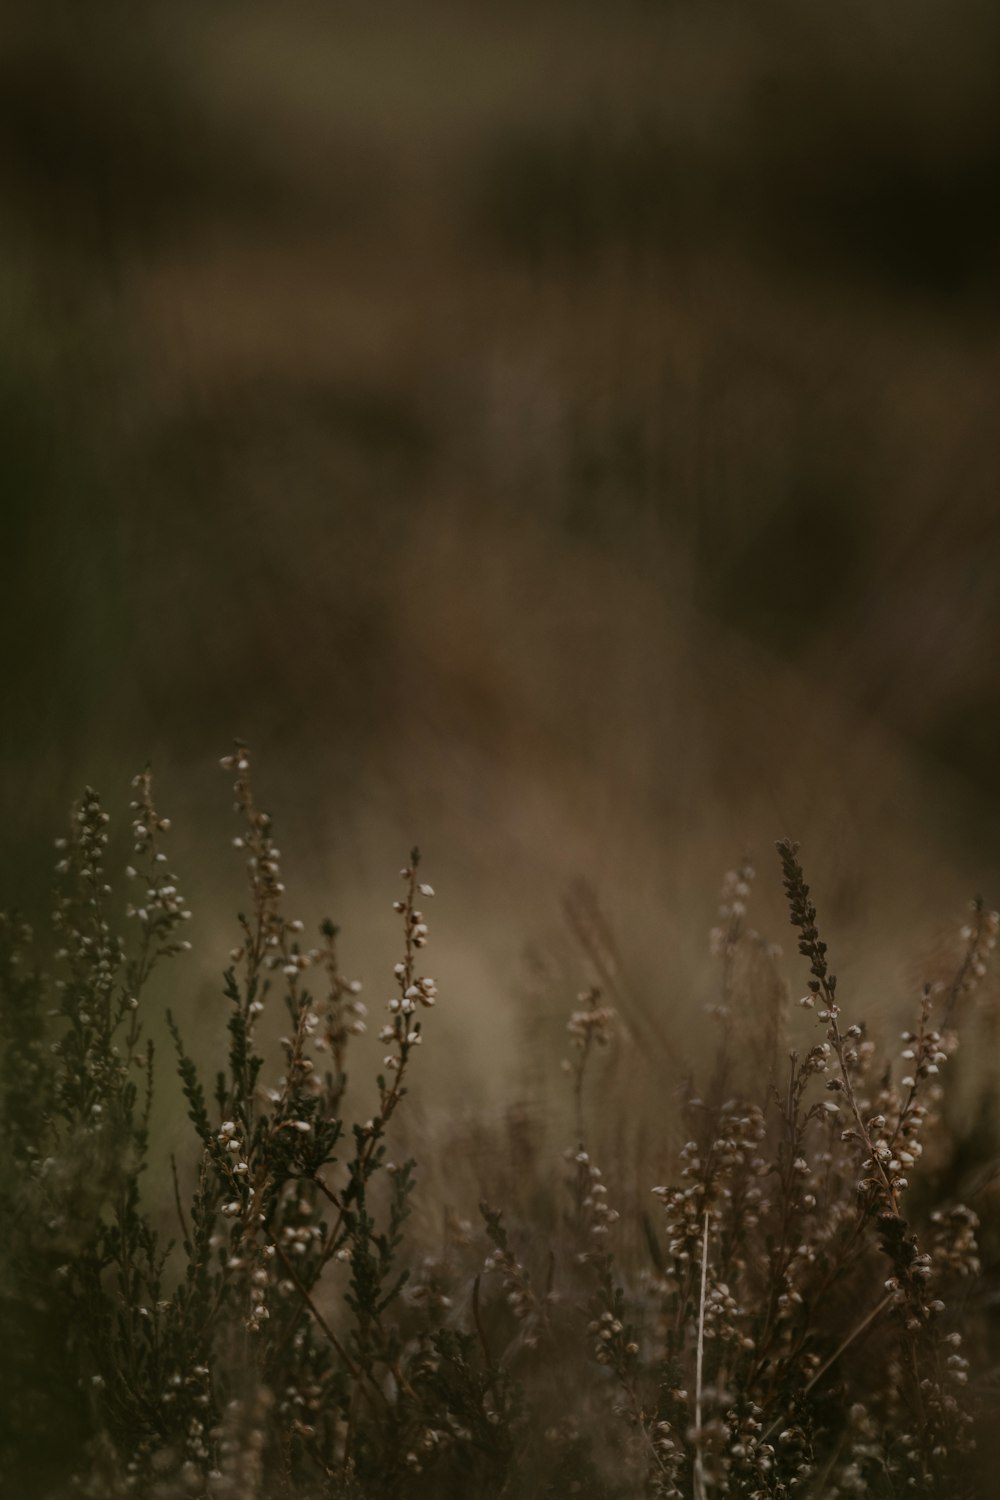 a blurry photo of a bird in a field